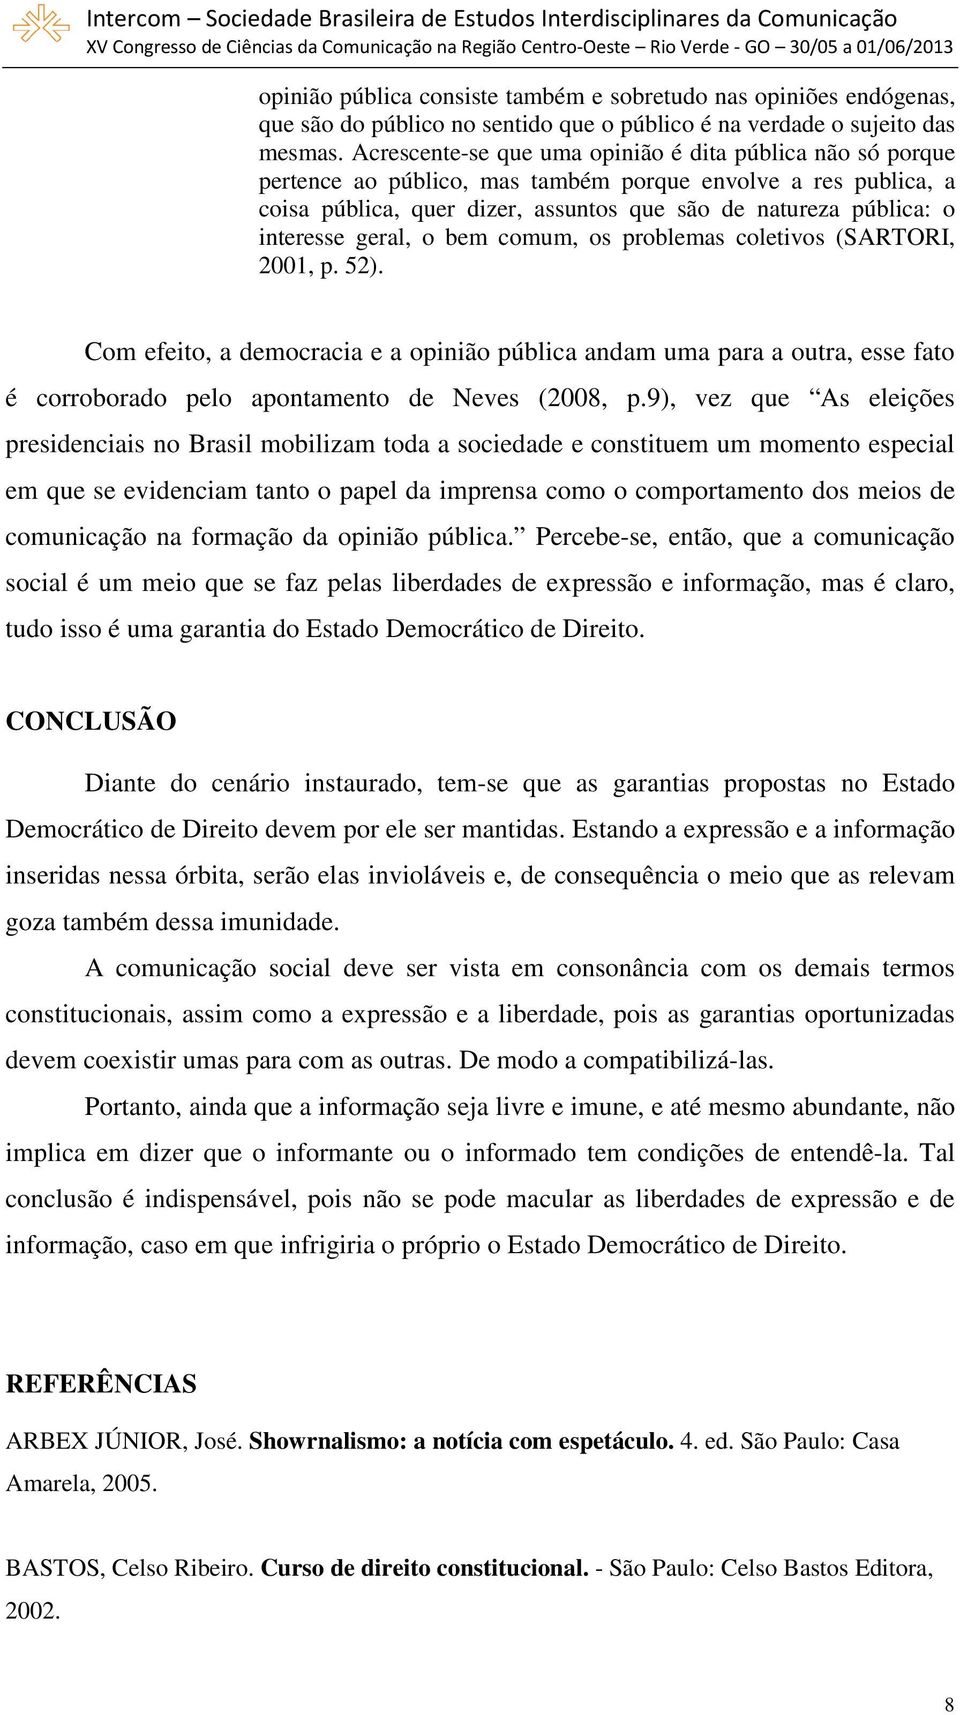 geral, o bem comum, os problemas coletivos (SARTORI, 2001, p. 52). Com efeito, a democracia e a opinião pública andam uma para a outra, esse fato é corroborado pelo apontamento de Neves (2008, p.